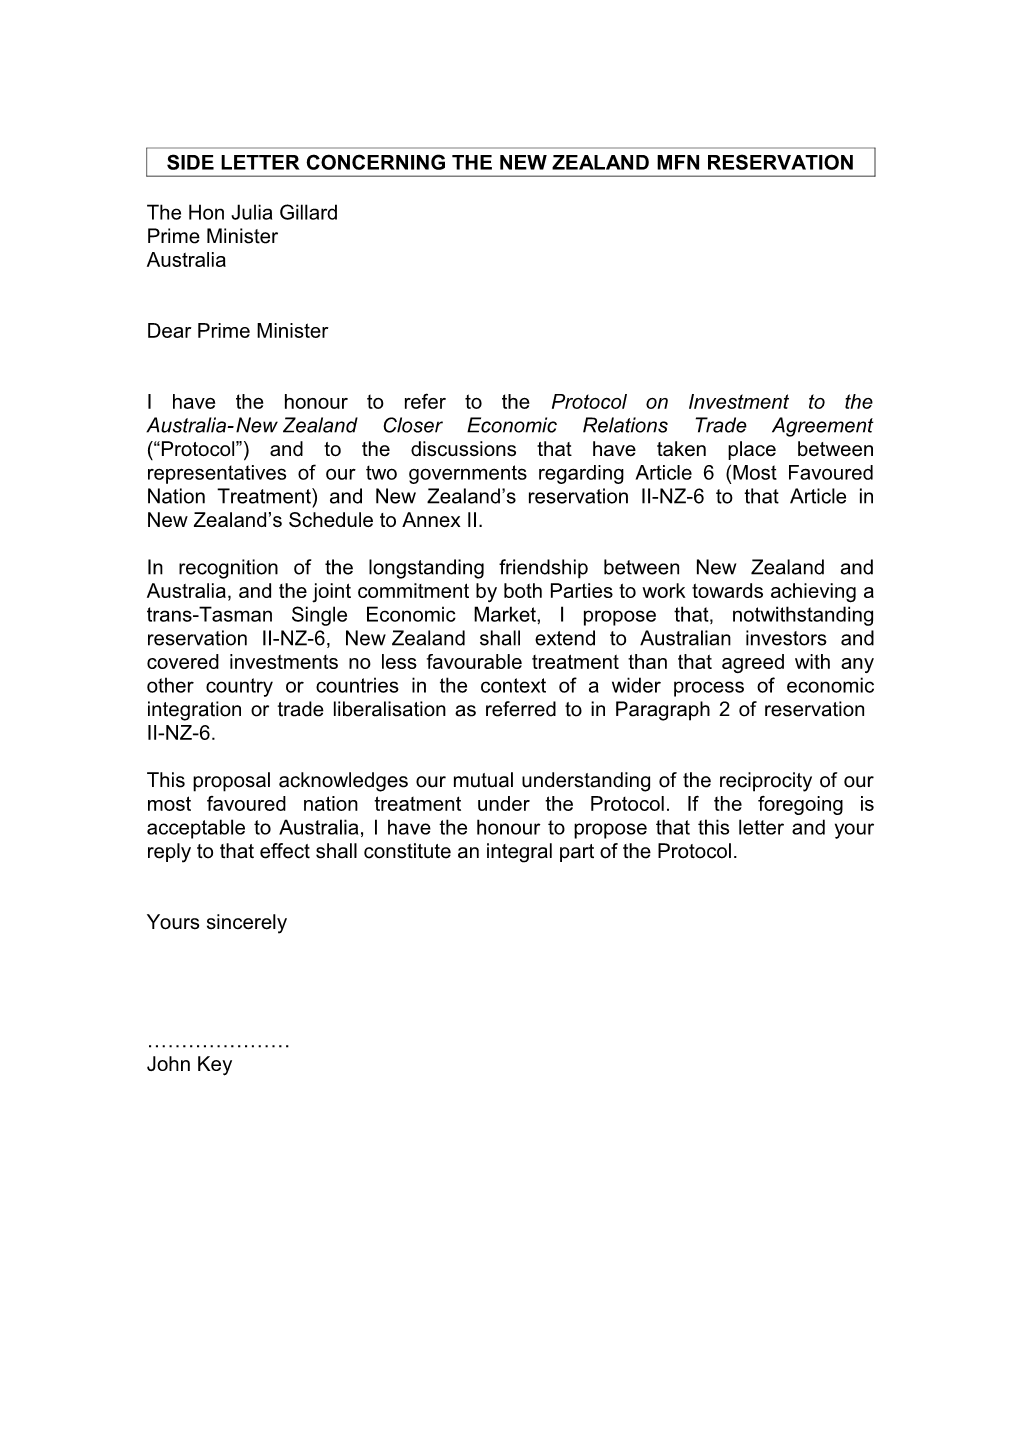 Side Letter Concerning the New Zealand MFN Reservation